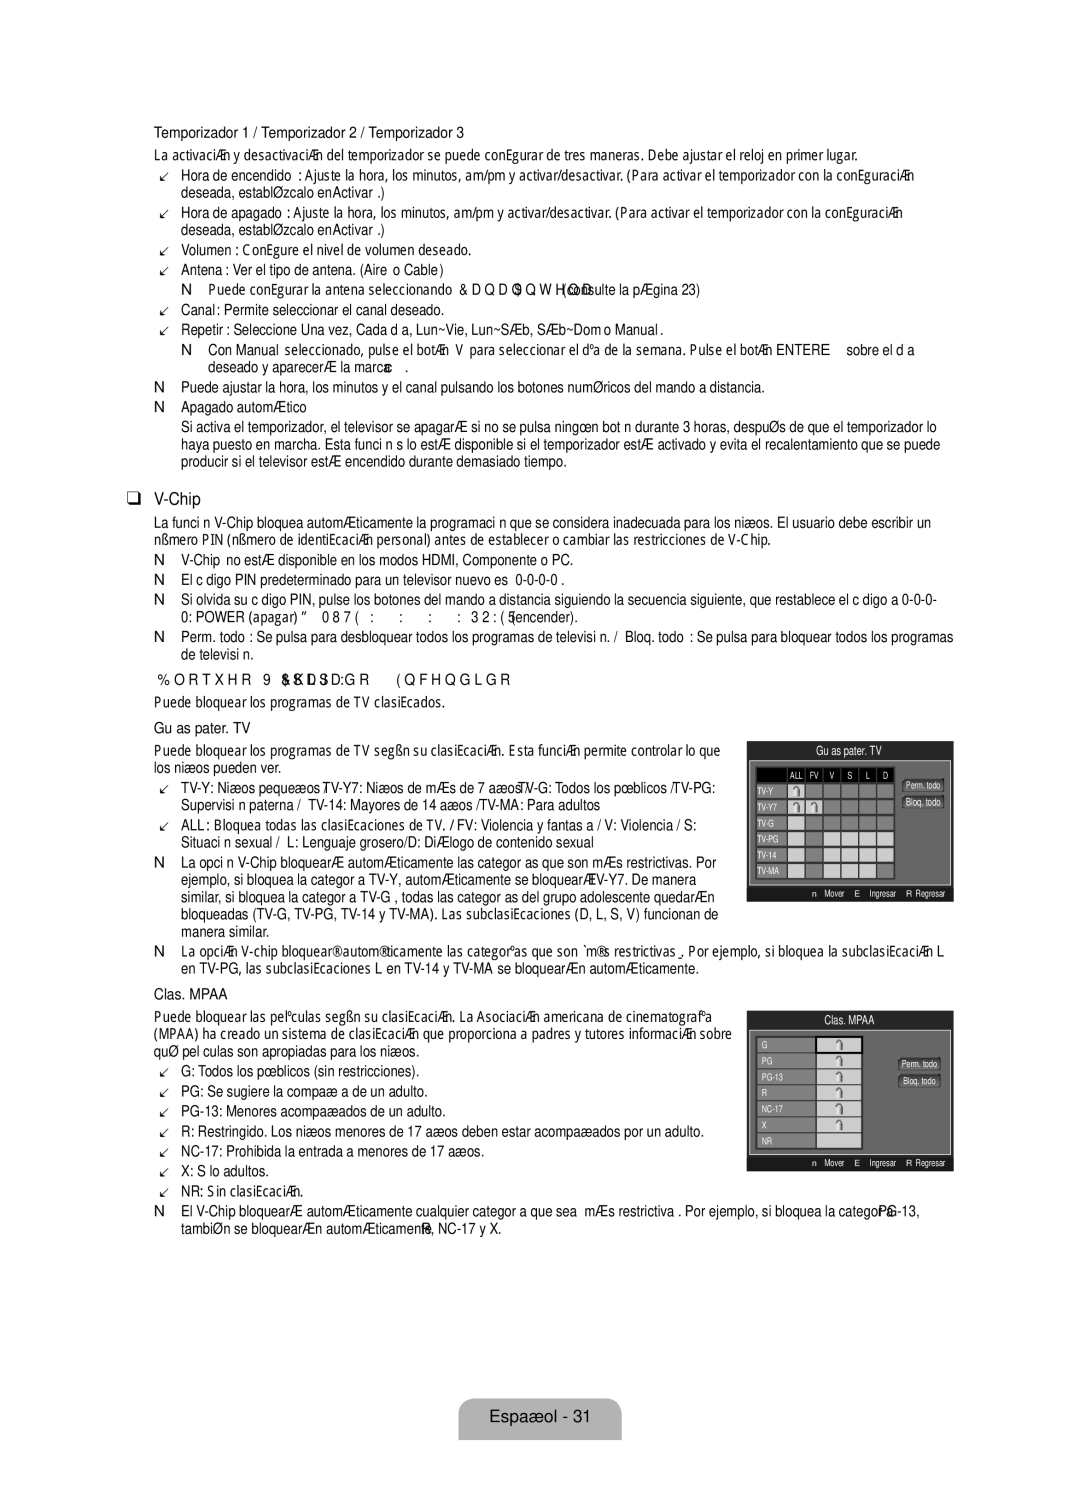 Samsung LN32B530  Temporizador 1 / Temporizador 2 / Temporizador, Apagado automático,  Guías pater. TV,  Clas. Mpaa 